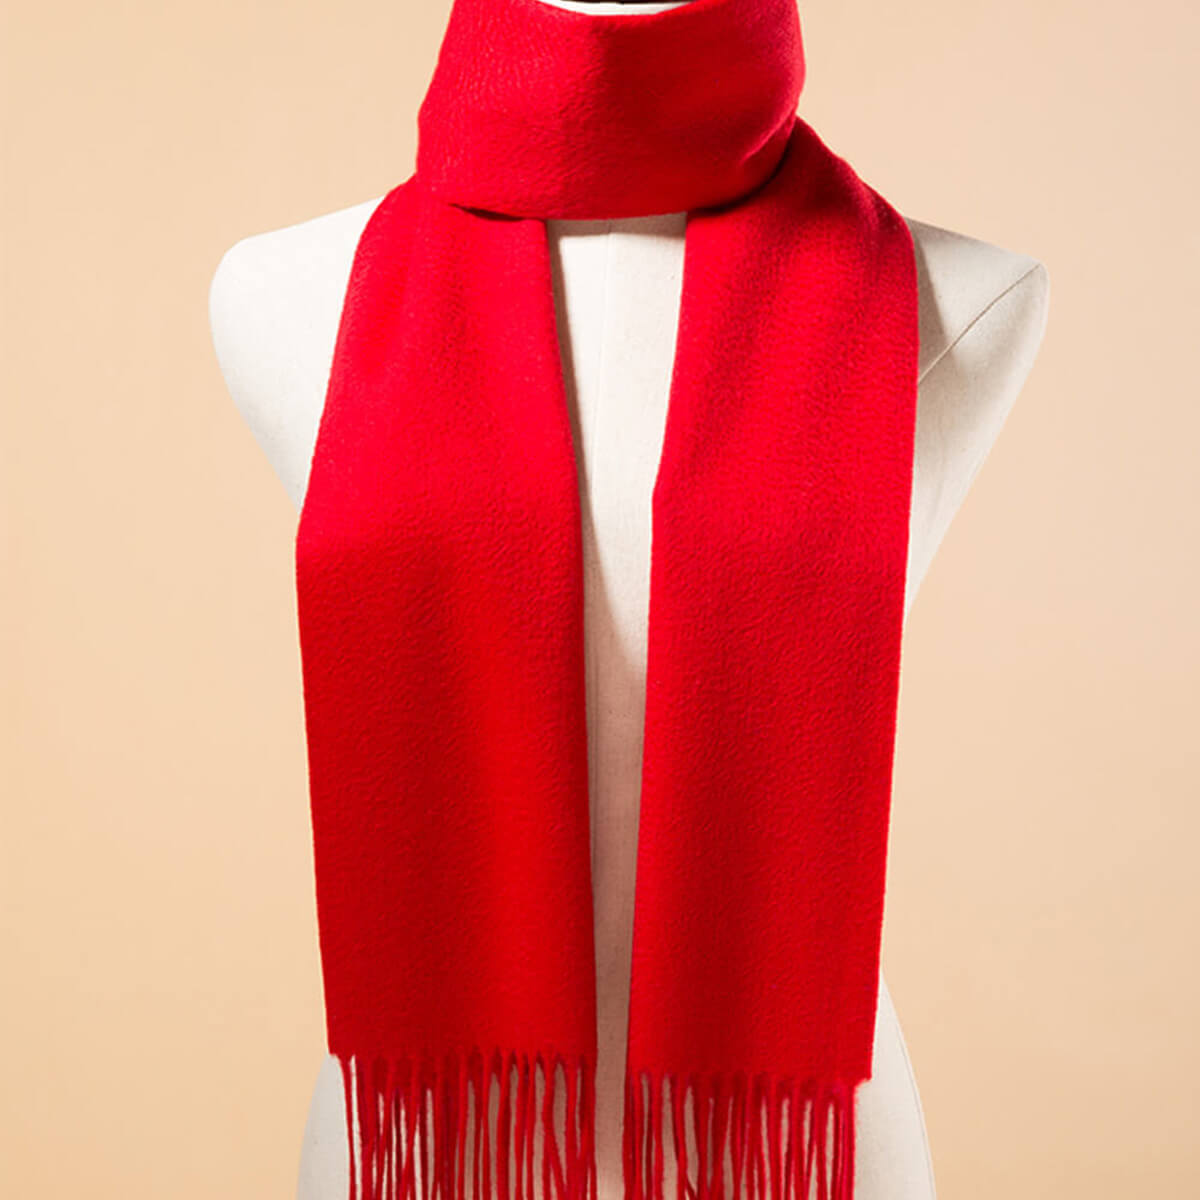 Bufanda de cachemir roja para hombre, bufanda de invierno para hombres